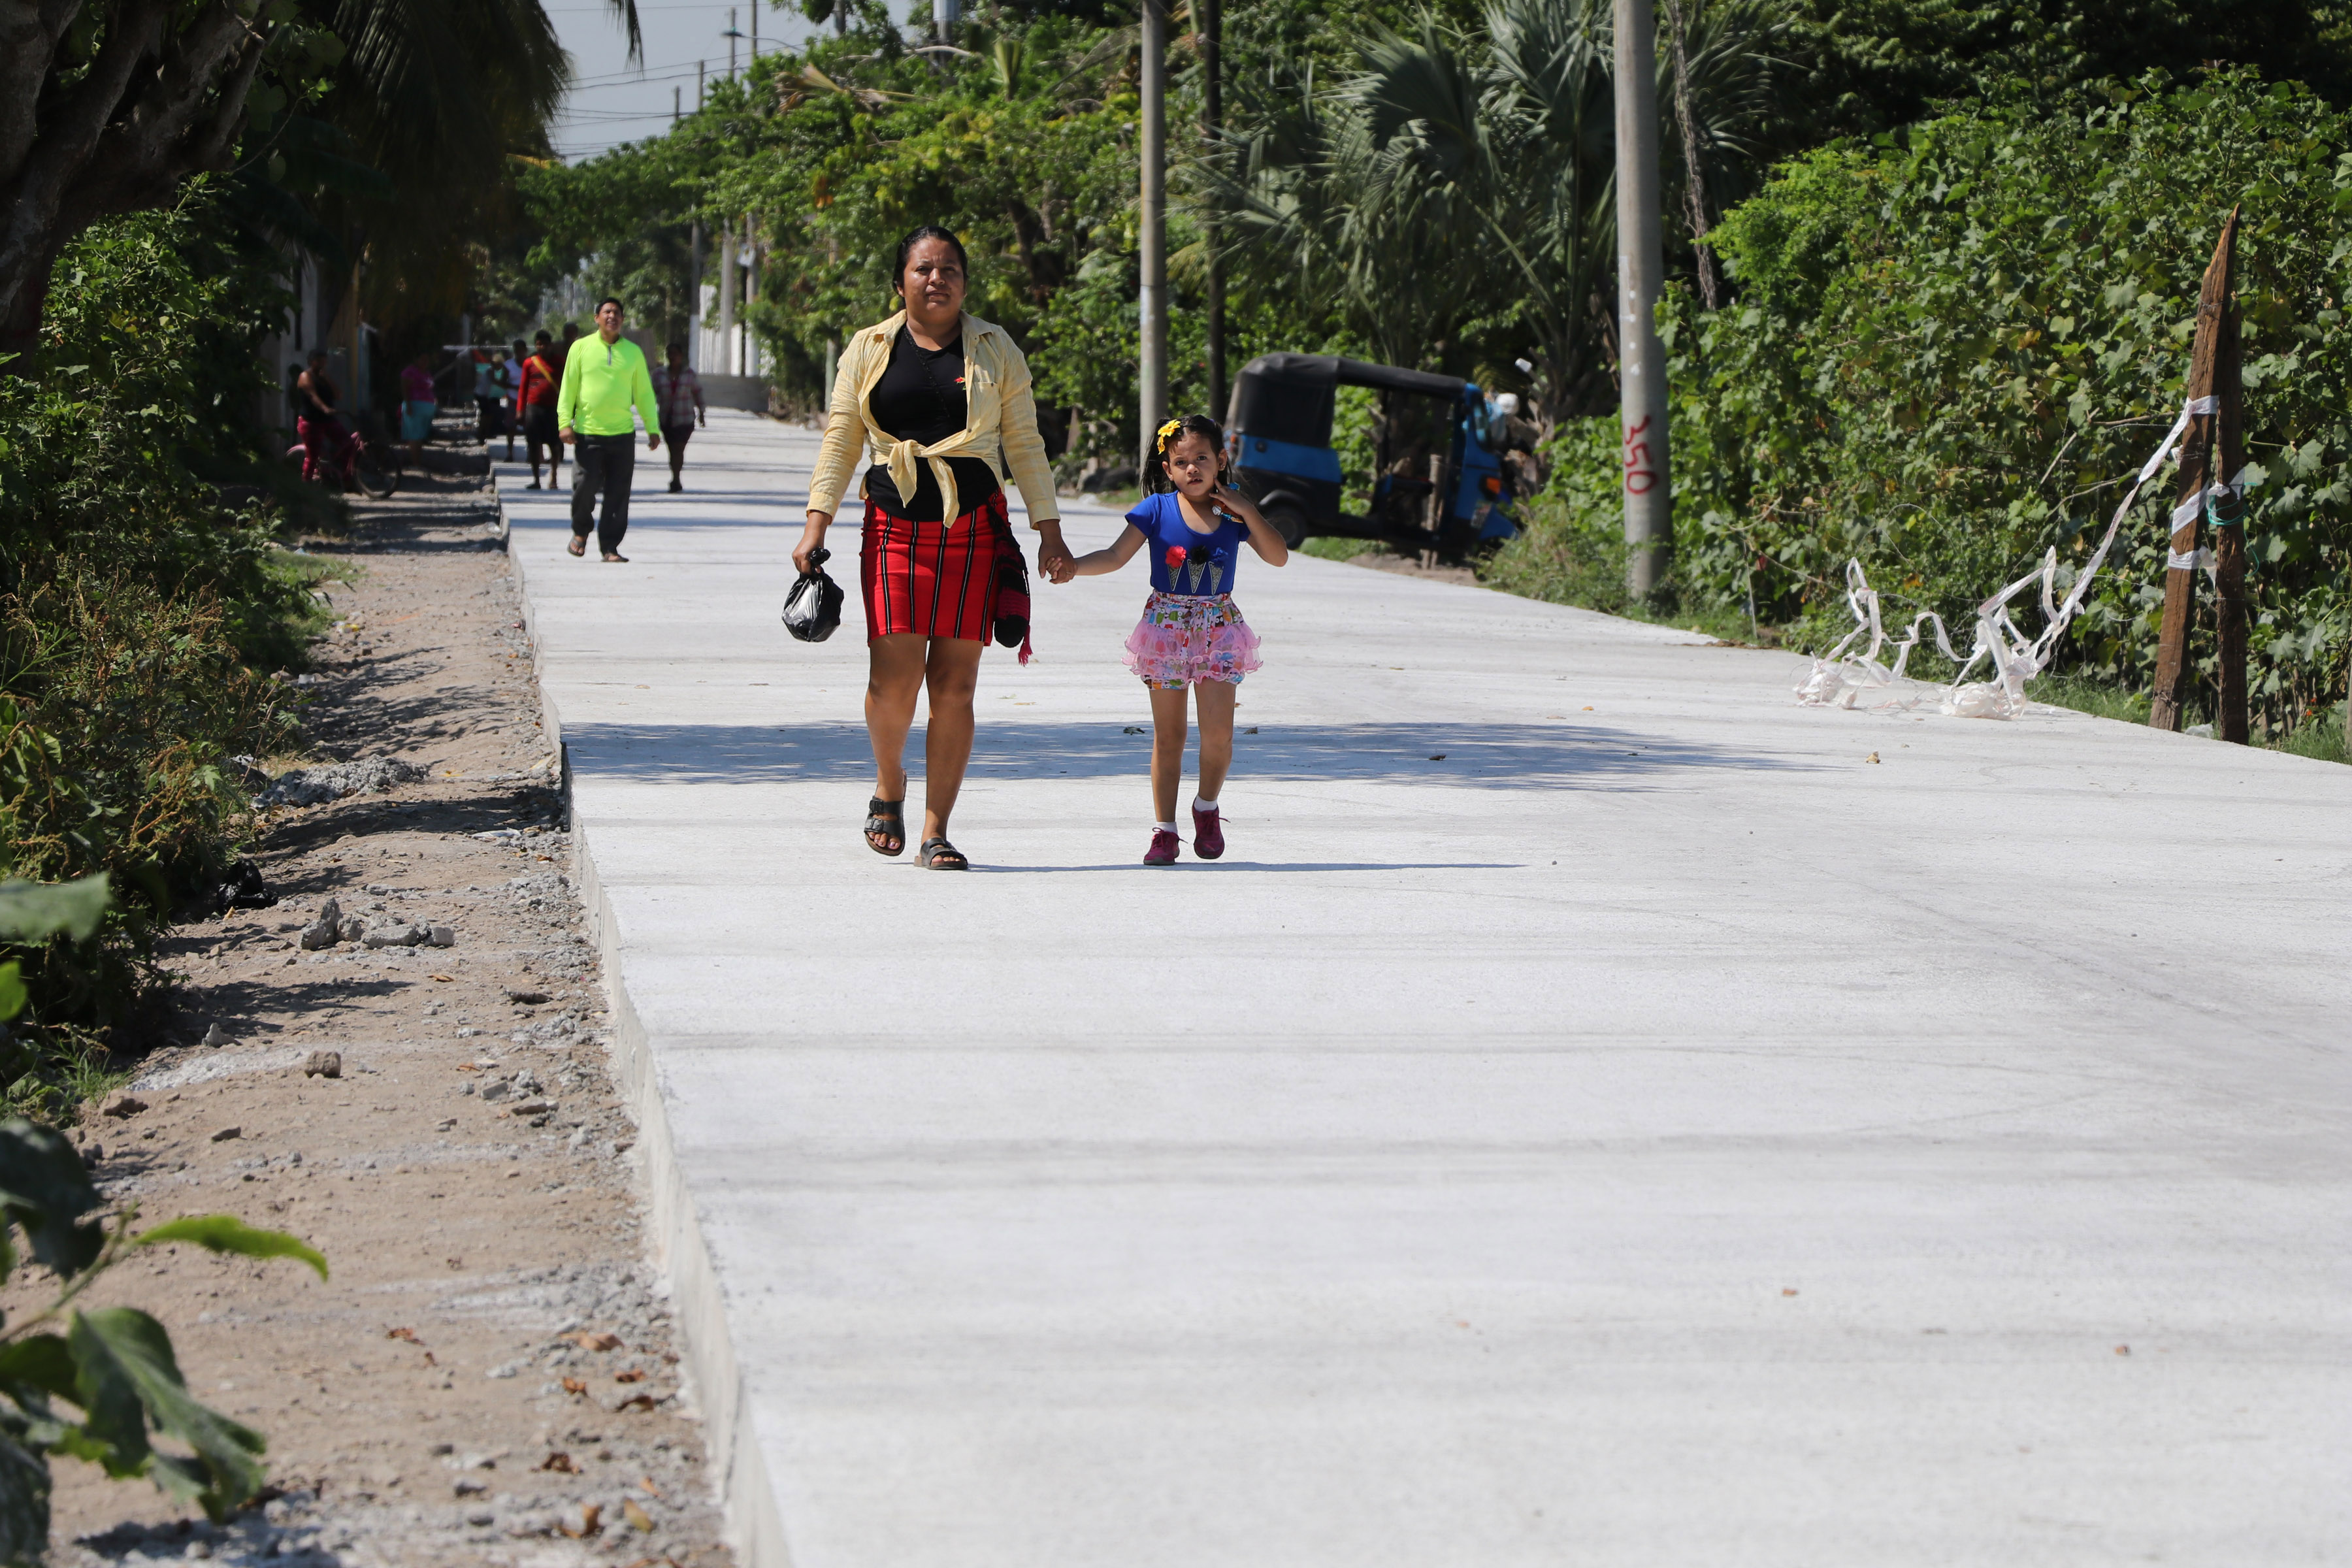 La calle es de concreto y tiene un grosor de 20 centímetros para que soporte el paso de vehículos pesados. (Foto Prensa Libre: Carlos Paredes)